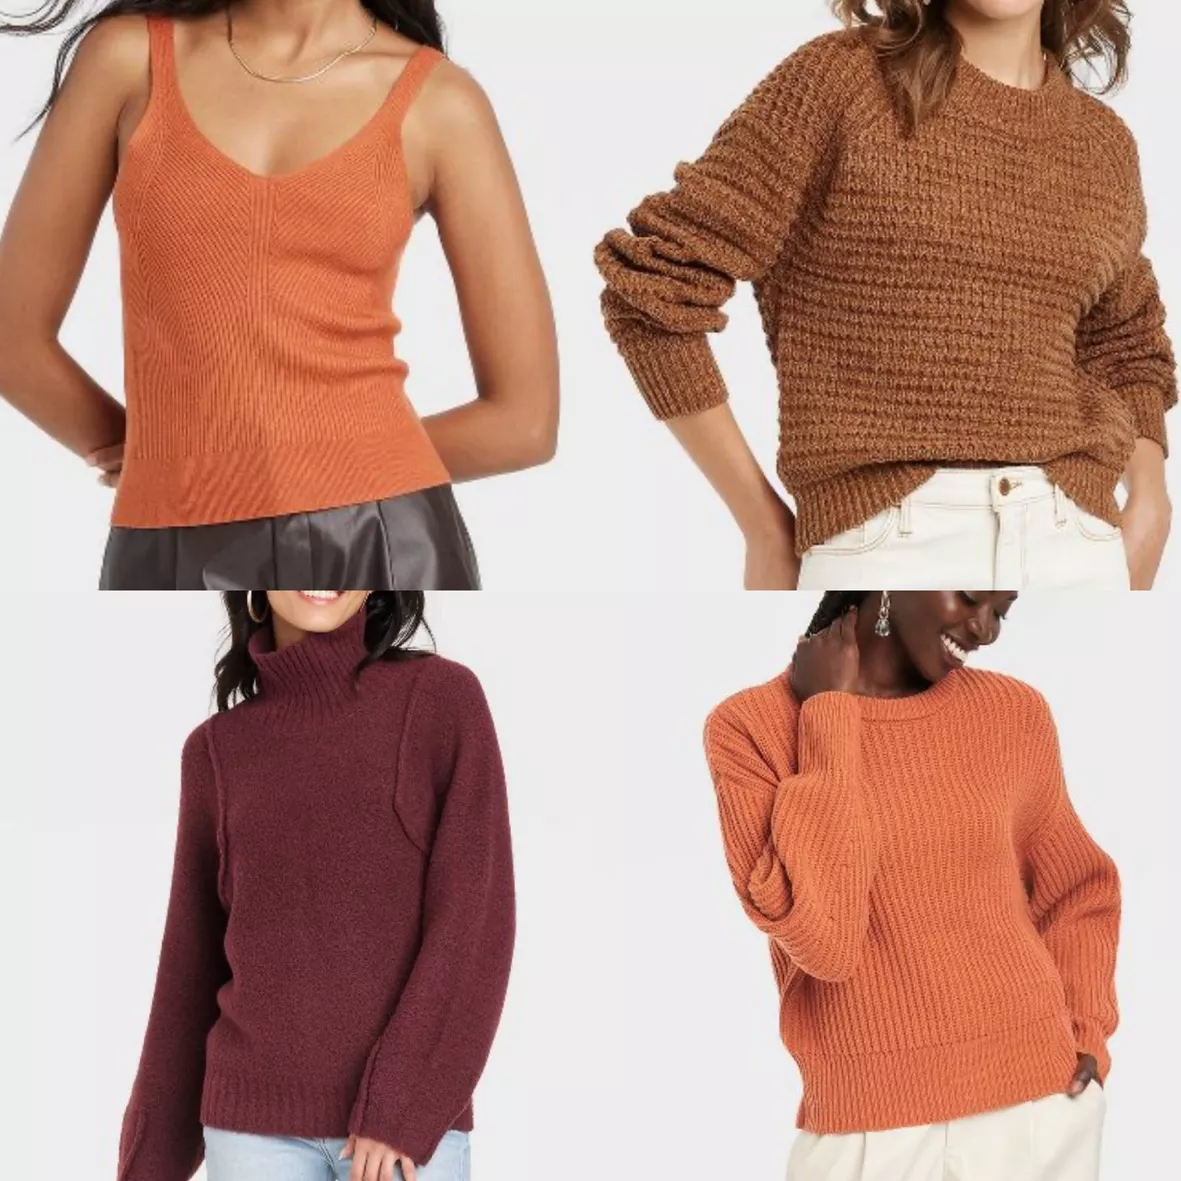 Women's Sweaters & Sweater Tanks